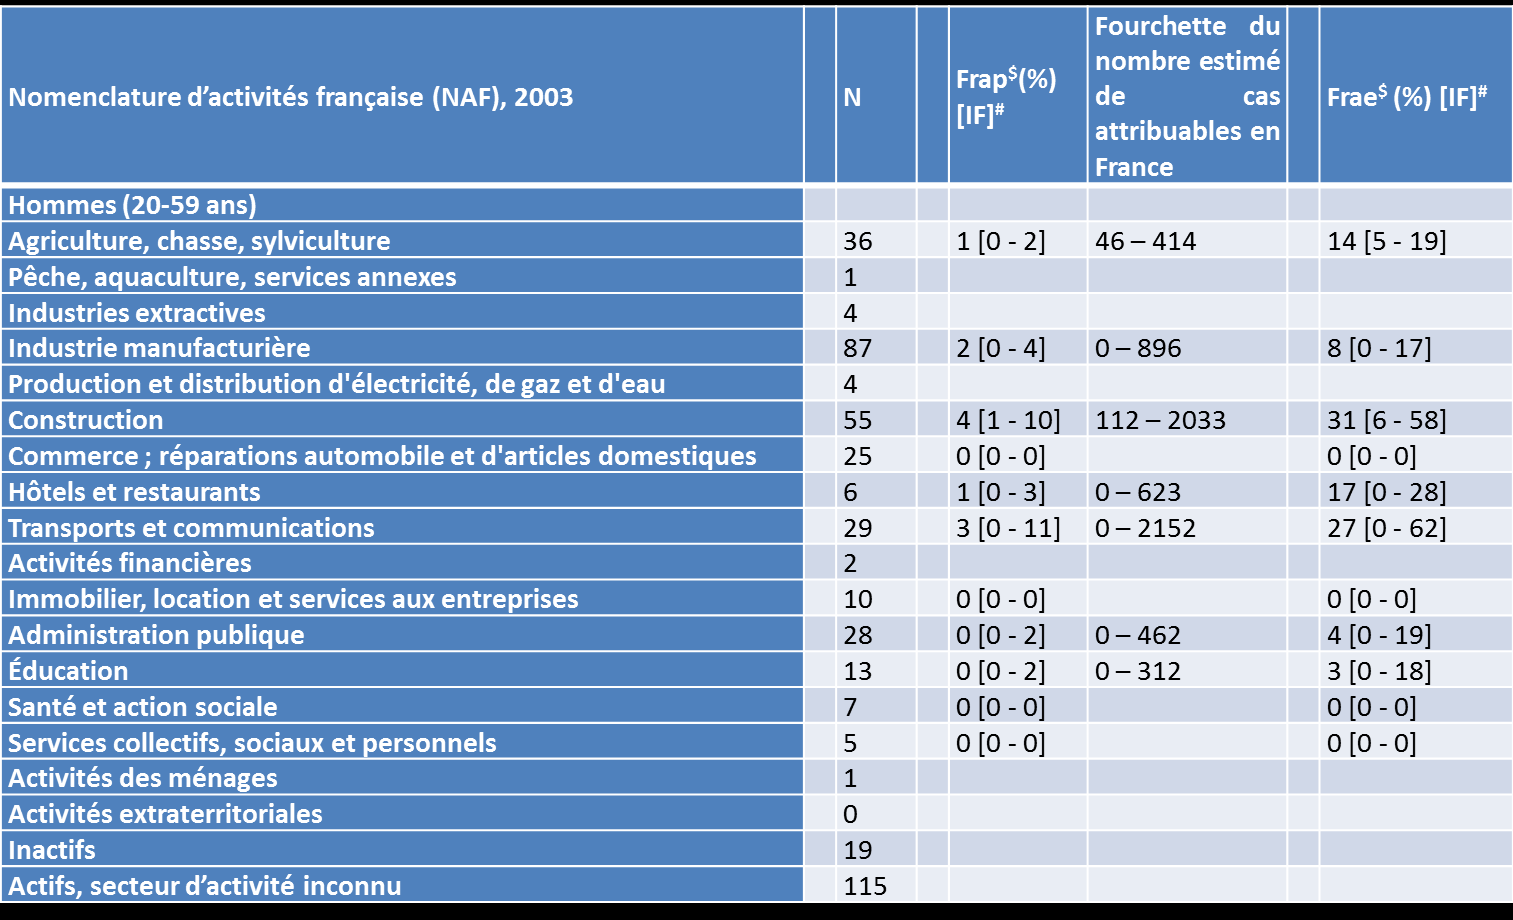 Fractions de risque de SCC opéré attribuables au secteur d activité pour chaque secteur et dans la population française (hommes).